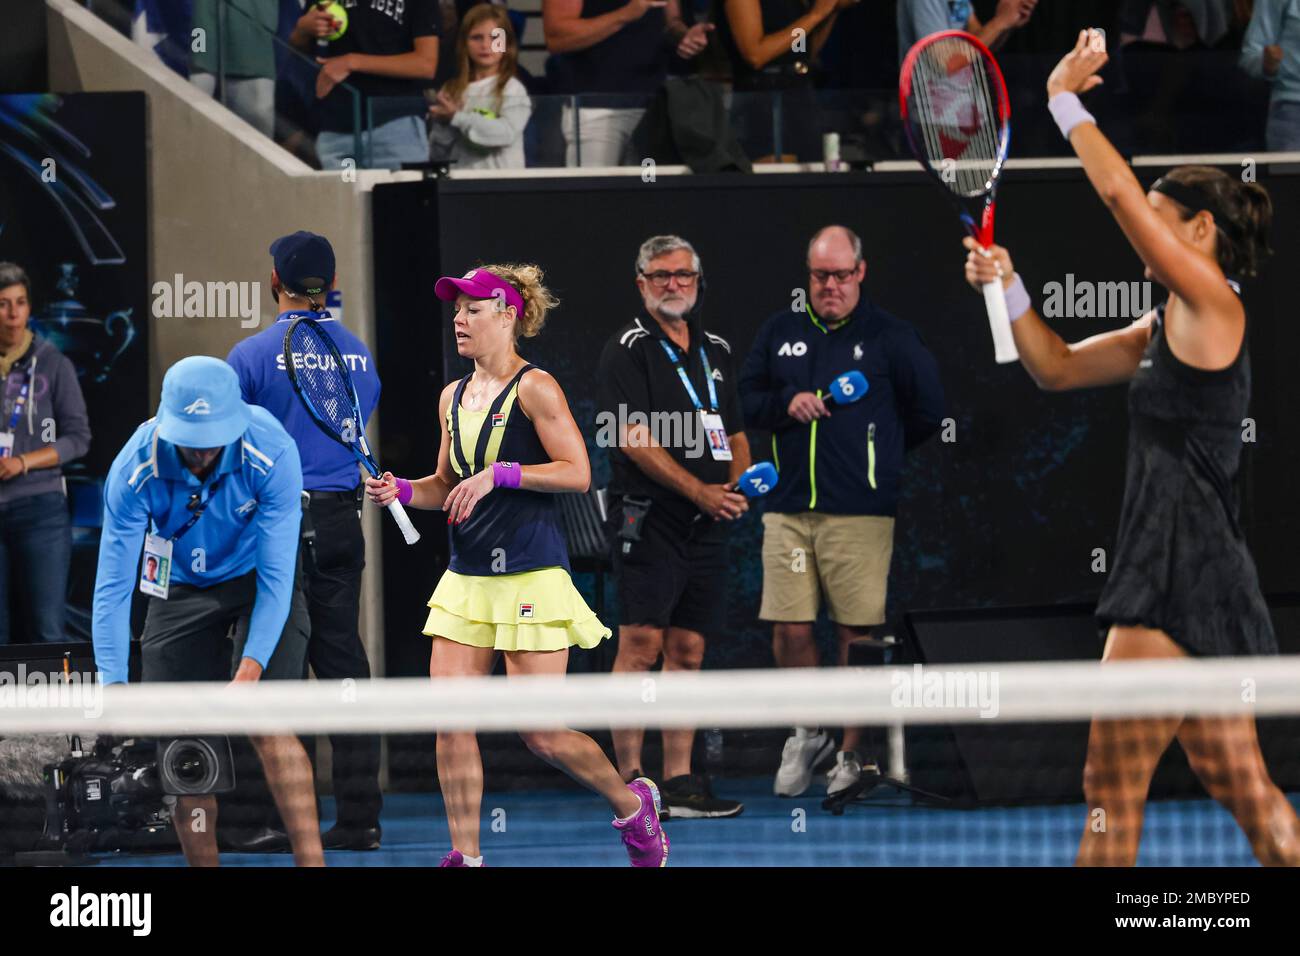 Tenis: Grand Slam - Abierto de Australia, Einzel, Damen, 3. Runde: Siegemund (Alemania) - García (Francia). Laura Siegemund (l) reagiert enttäuscht. Foto de stock